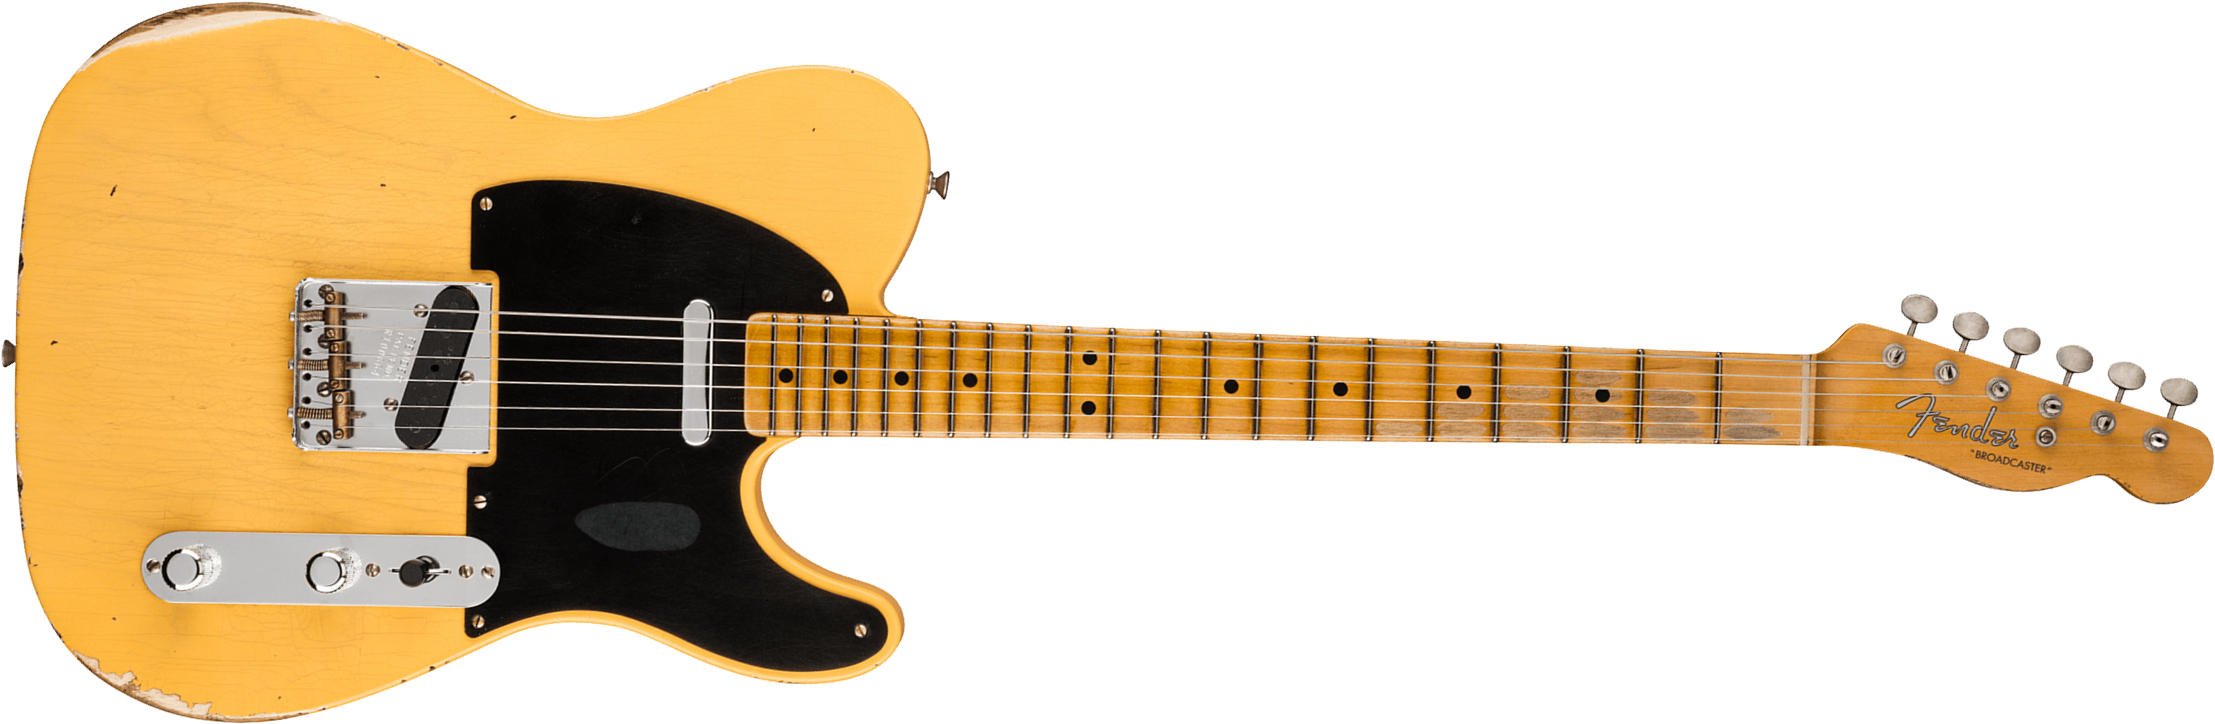 Fender Custom Shop Broadcaster Tele 70th Anniversary Ltd Mn - Relic Aged Nocaster Blonde - E-Gitarre in Teleform - Main picture